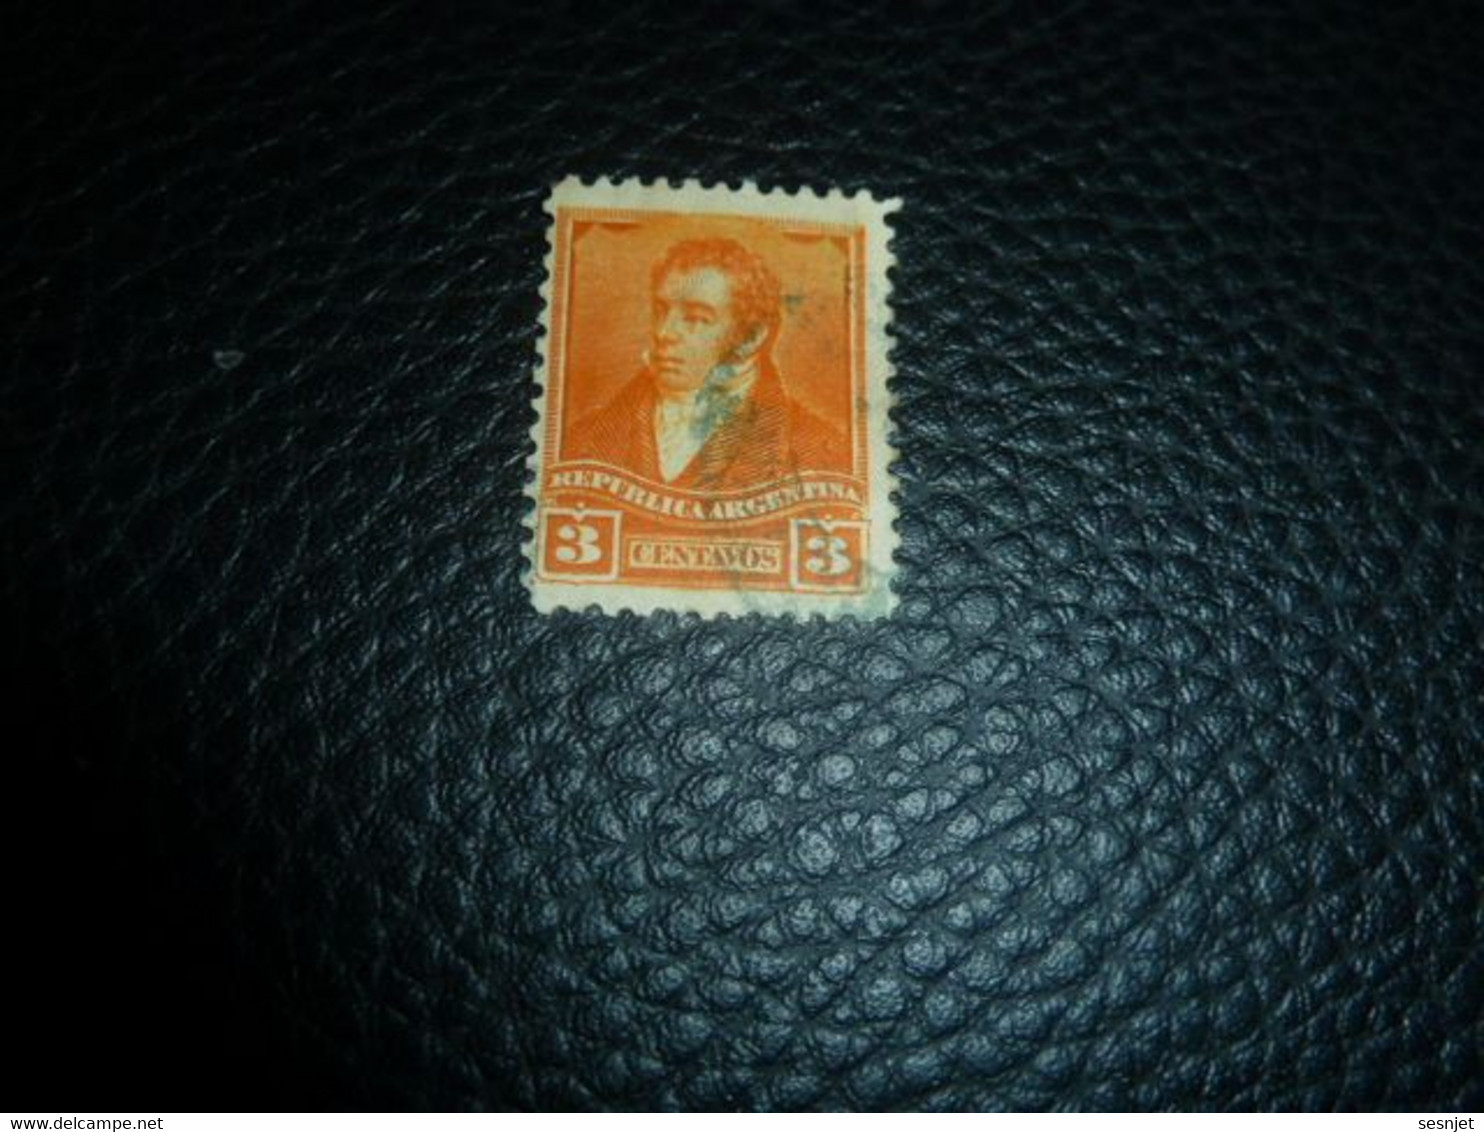 Republica Argentina - Bernardino Rivadavia - 3 Centavos - Yt 97 - Orange - Oblitéré - Année 1898 - - Used Stamps